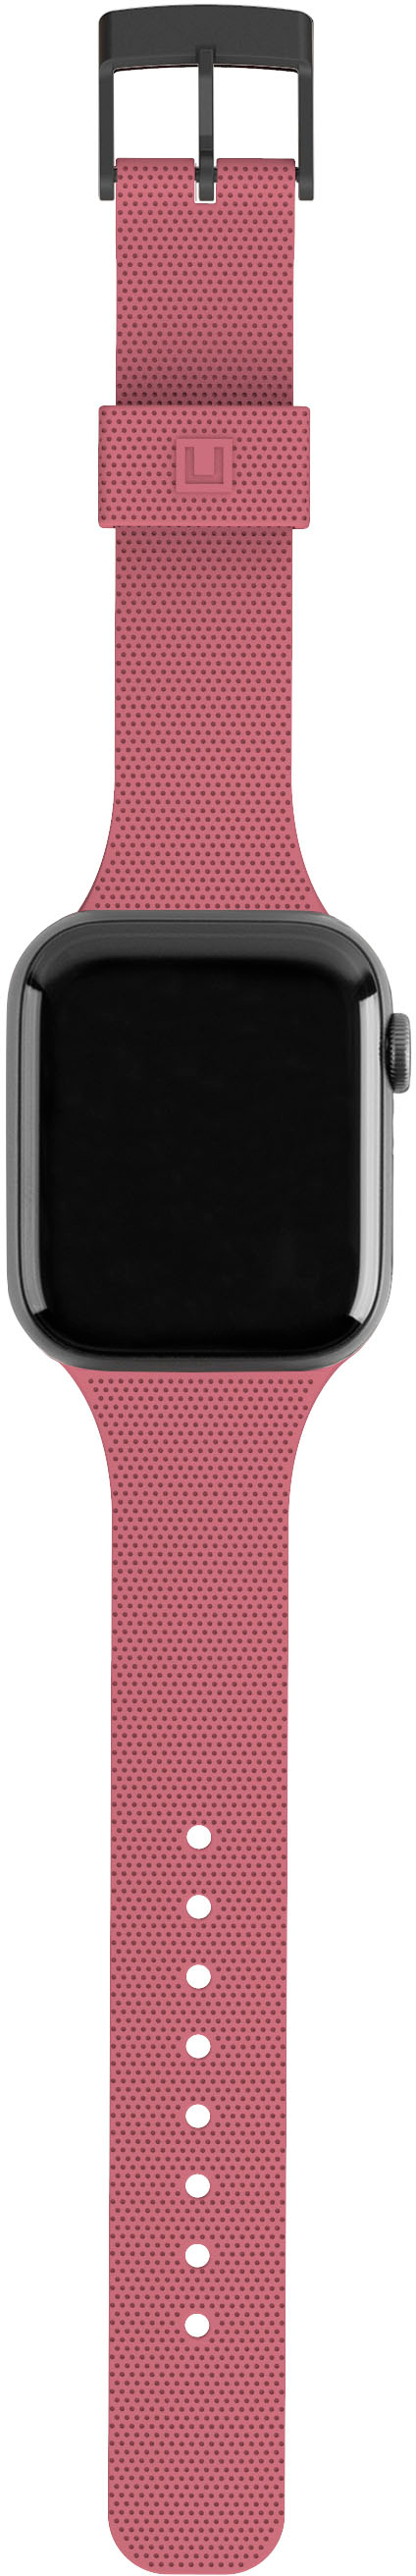 Handdn Light Pink Calfskin Apple Watch Band